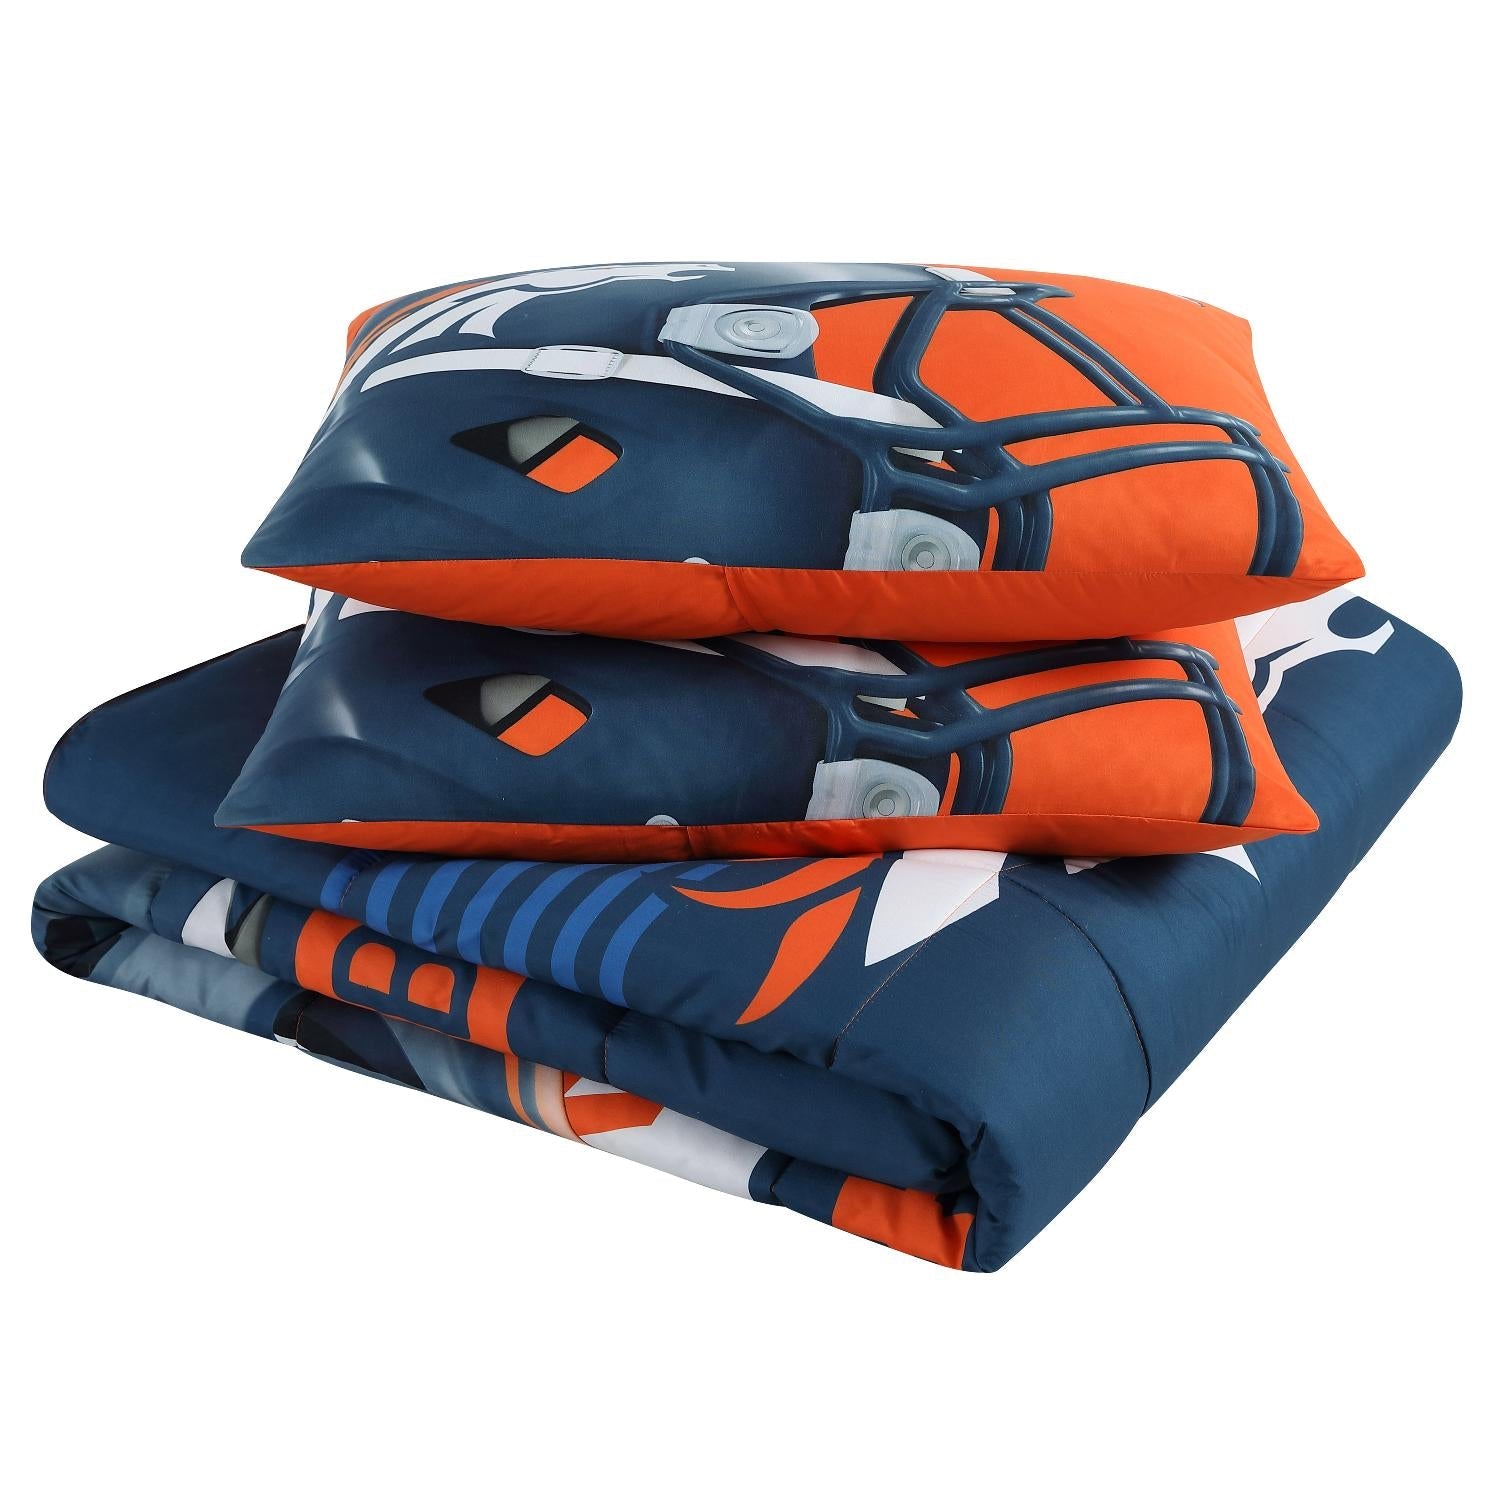 Denver Broncos NFL Officially Licensed 3-Piece Comforter Set - Folded